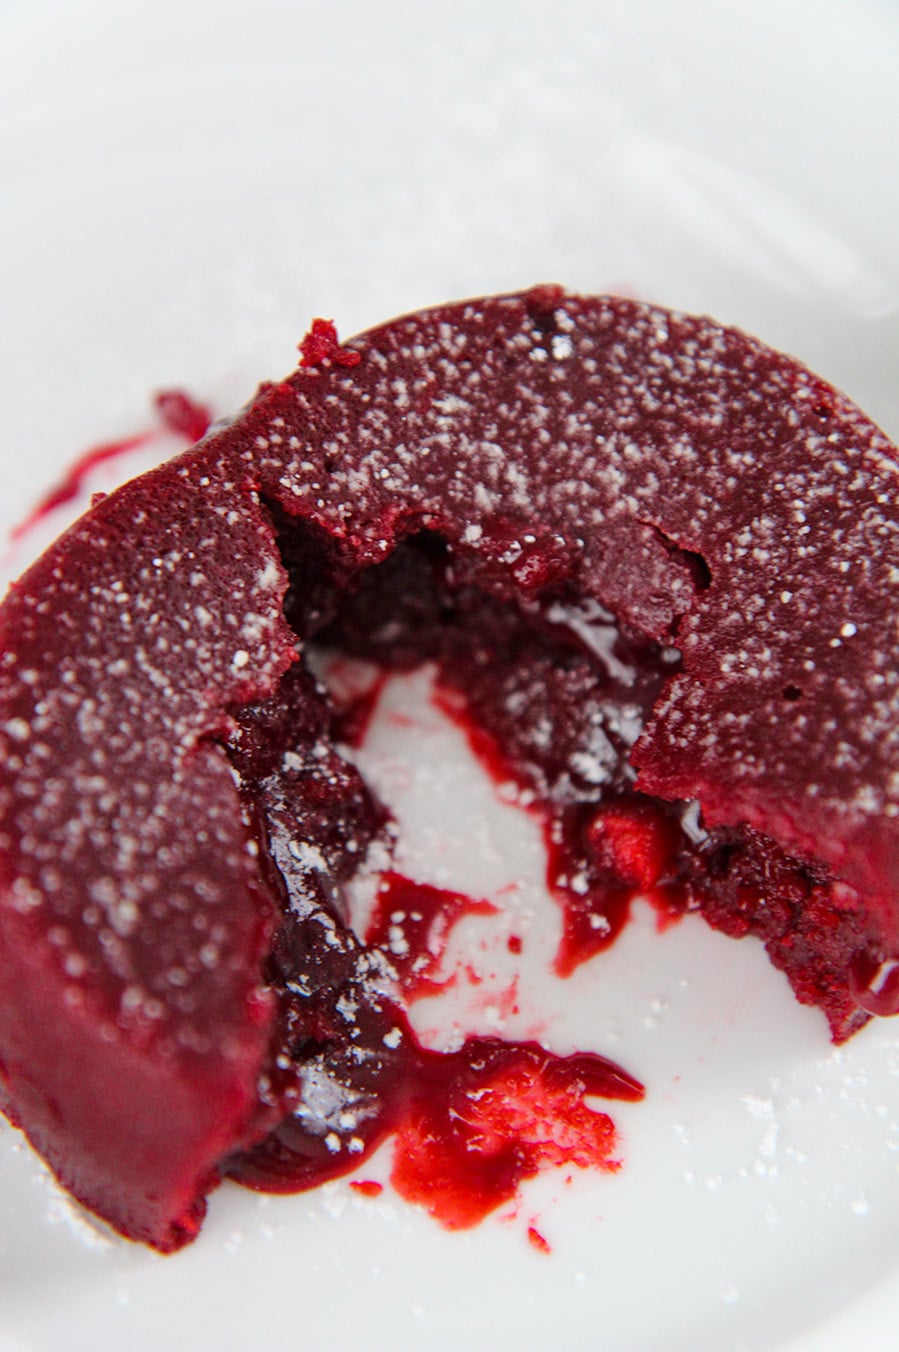 red velvet lava cake on a white plate